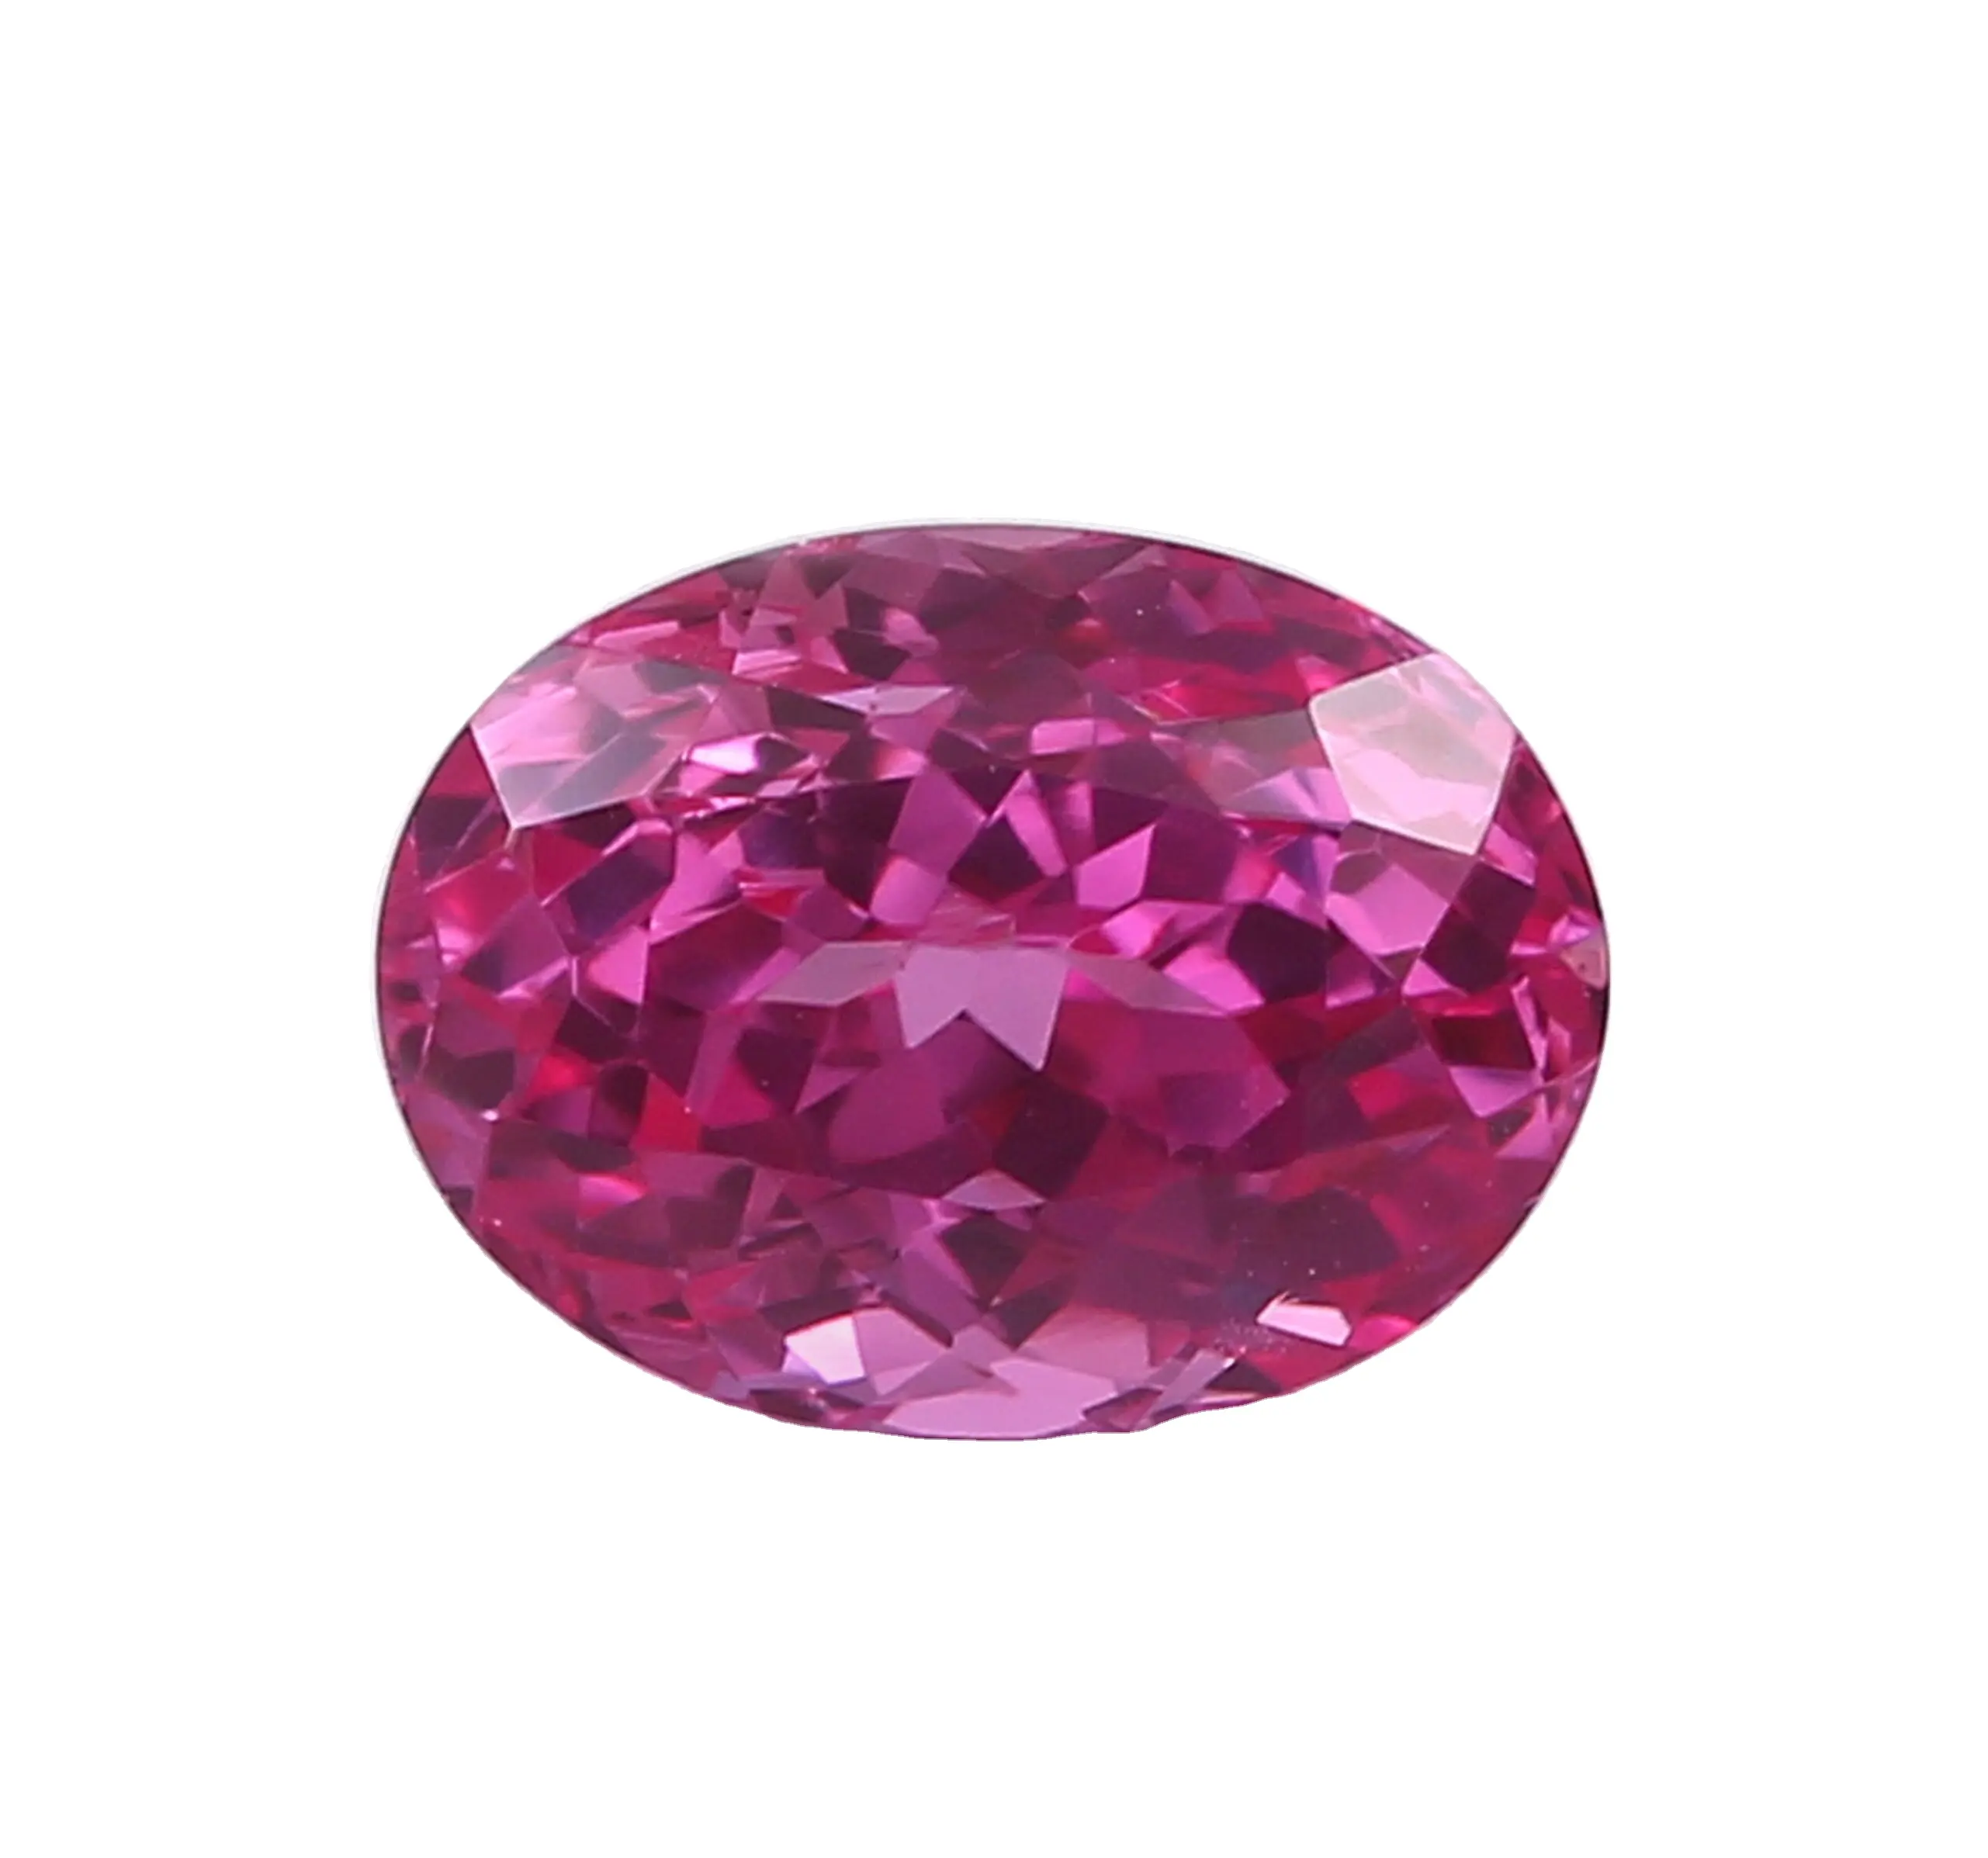 Piedra preciosa cultivada en laboratorio suelta de zafiro rosa para hacer joyas para mujeres, tamaño calibrado disponible de 5mm a 25mm